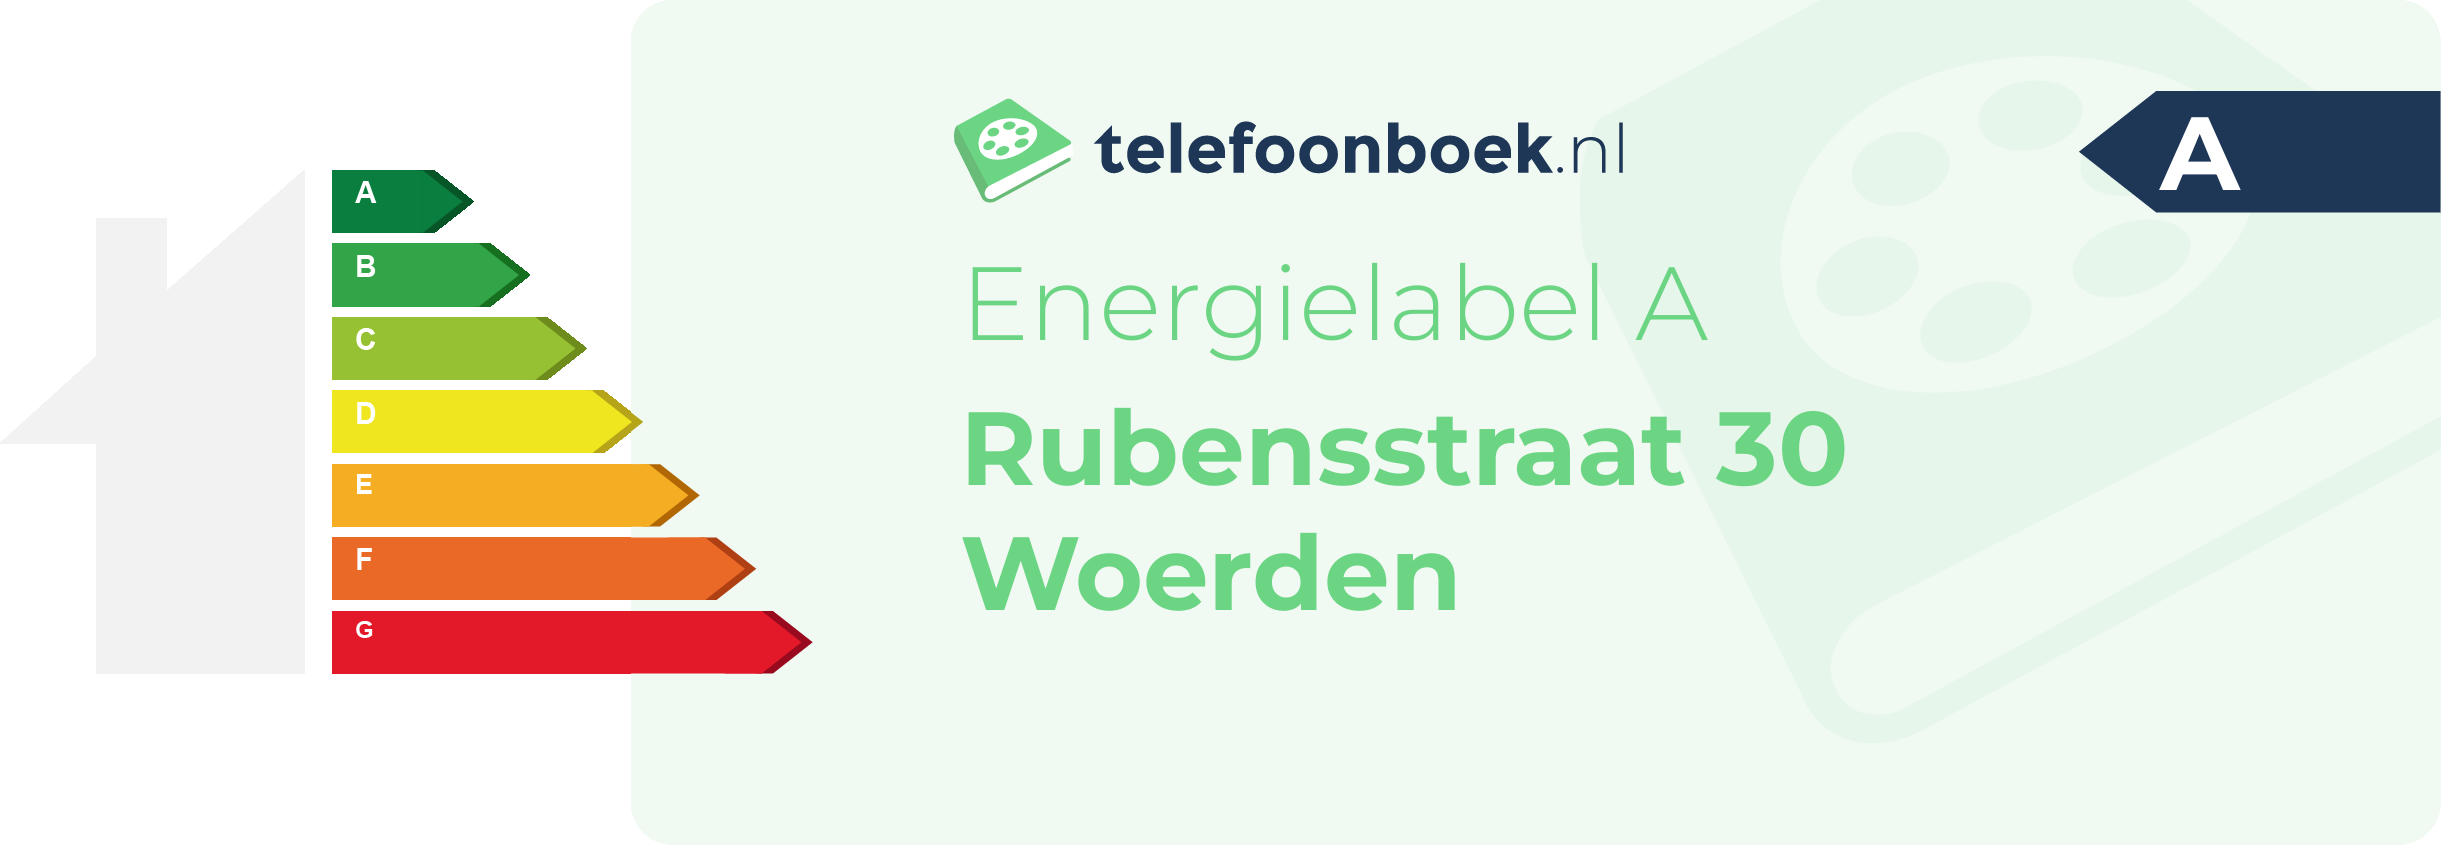 Energielabel Rubensstraat 30 Woerden